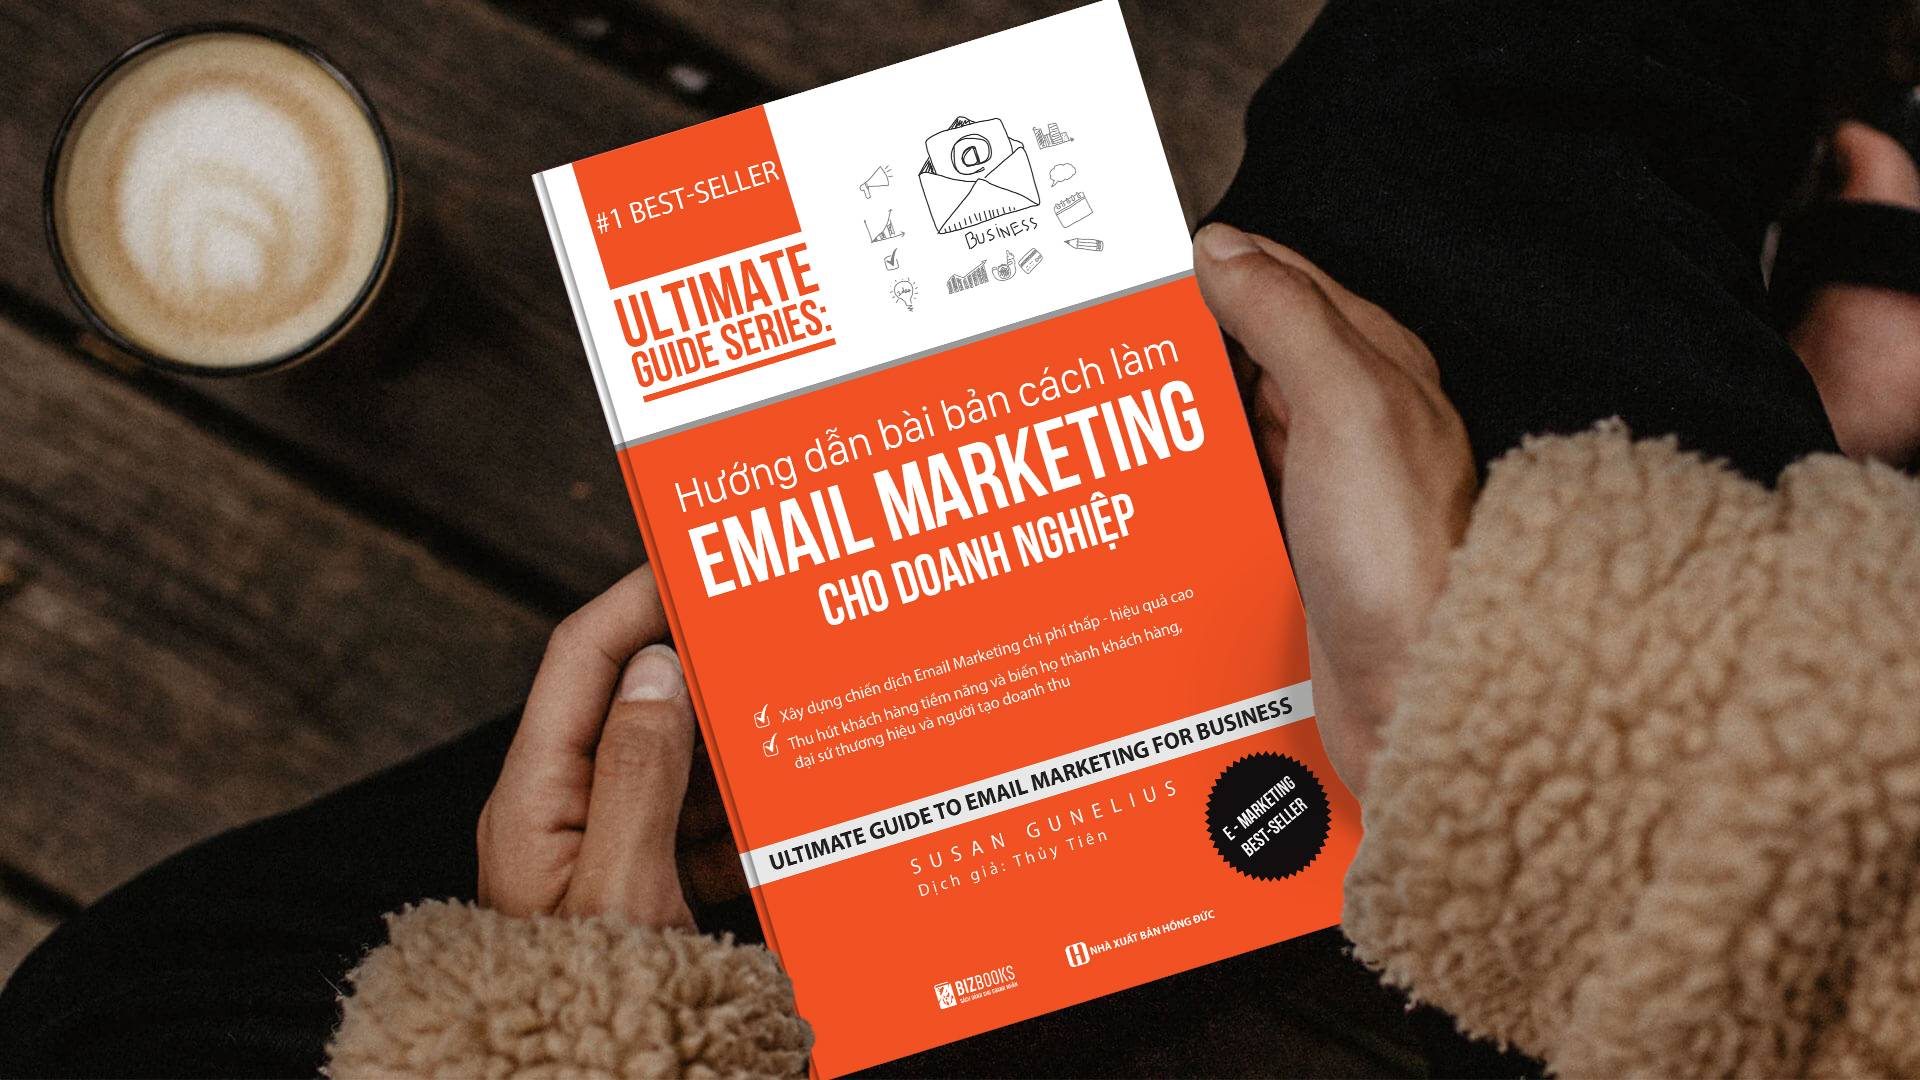 Hướng dẫn bài bản cách làm Email Marketing cho doanh nghiệp | Ultimate Guide Series 6